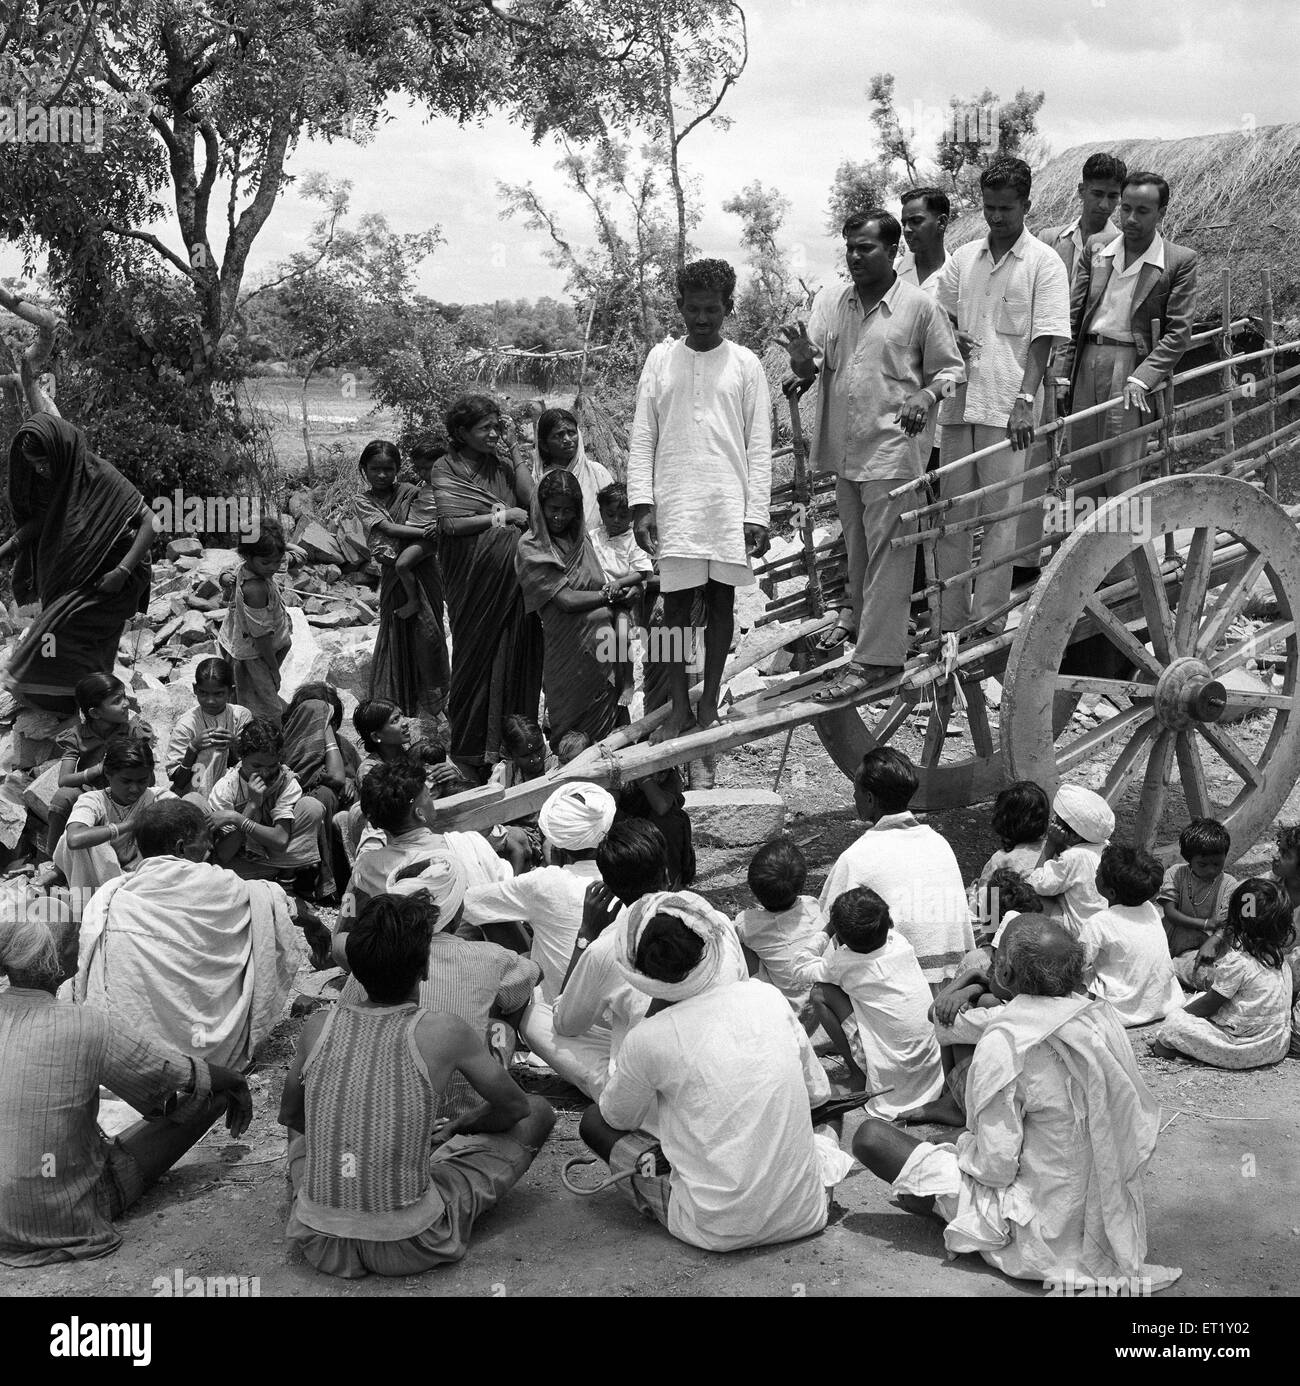 Groupe d'interaction formation de la jeunesse rurale ; ville de Nanjangud près de Mysore ; Karnataka ; Inde ; Asie ; Asie ;Indien ; ancienne image millésime des années 1900 Banque D'Images